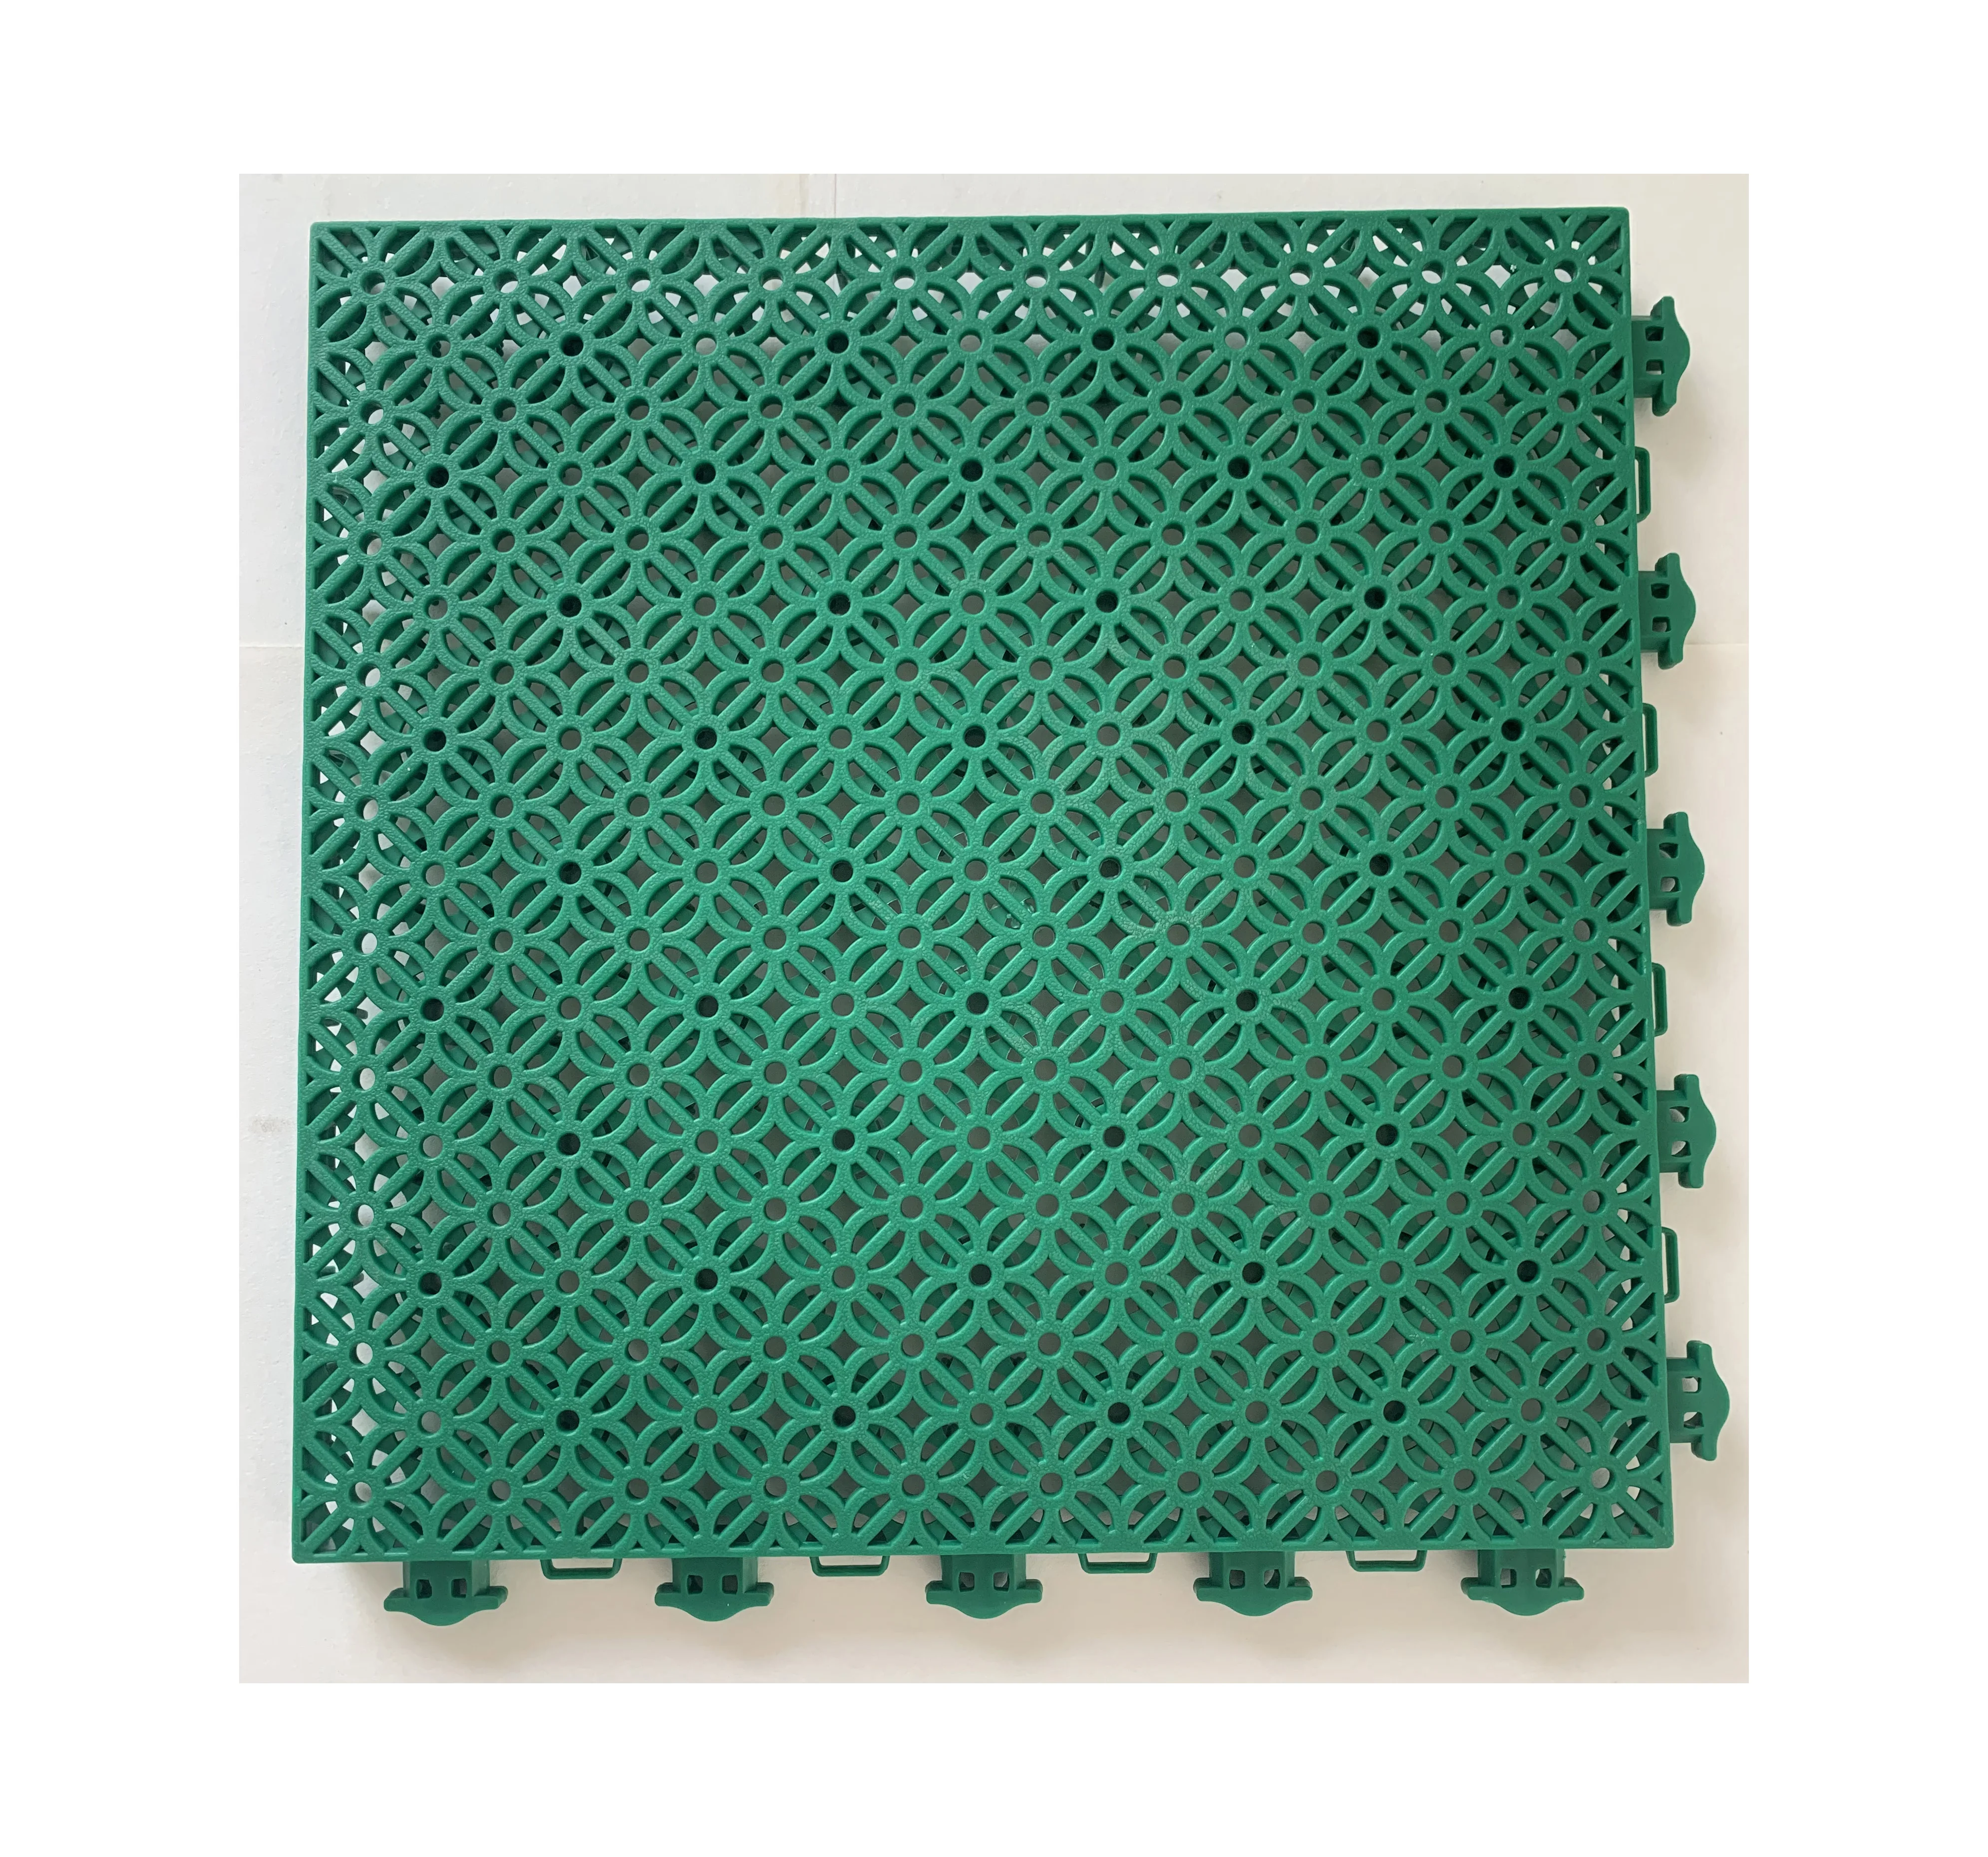 outdoor plastic rubber floor basketball soccer modular tile sport pickleball court flooring mat